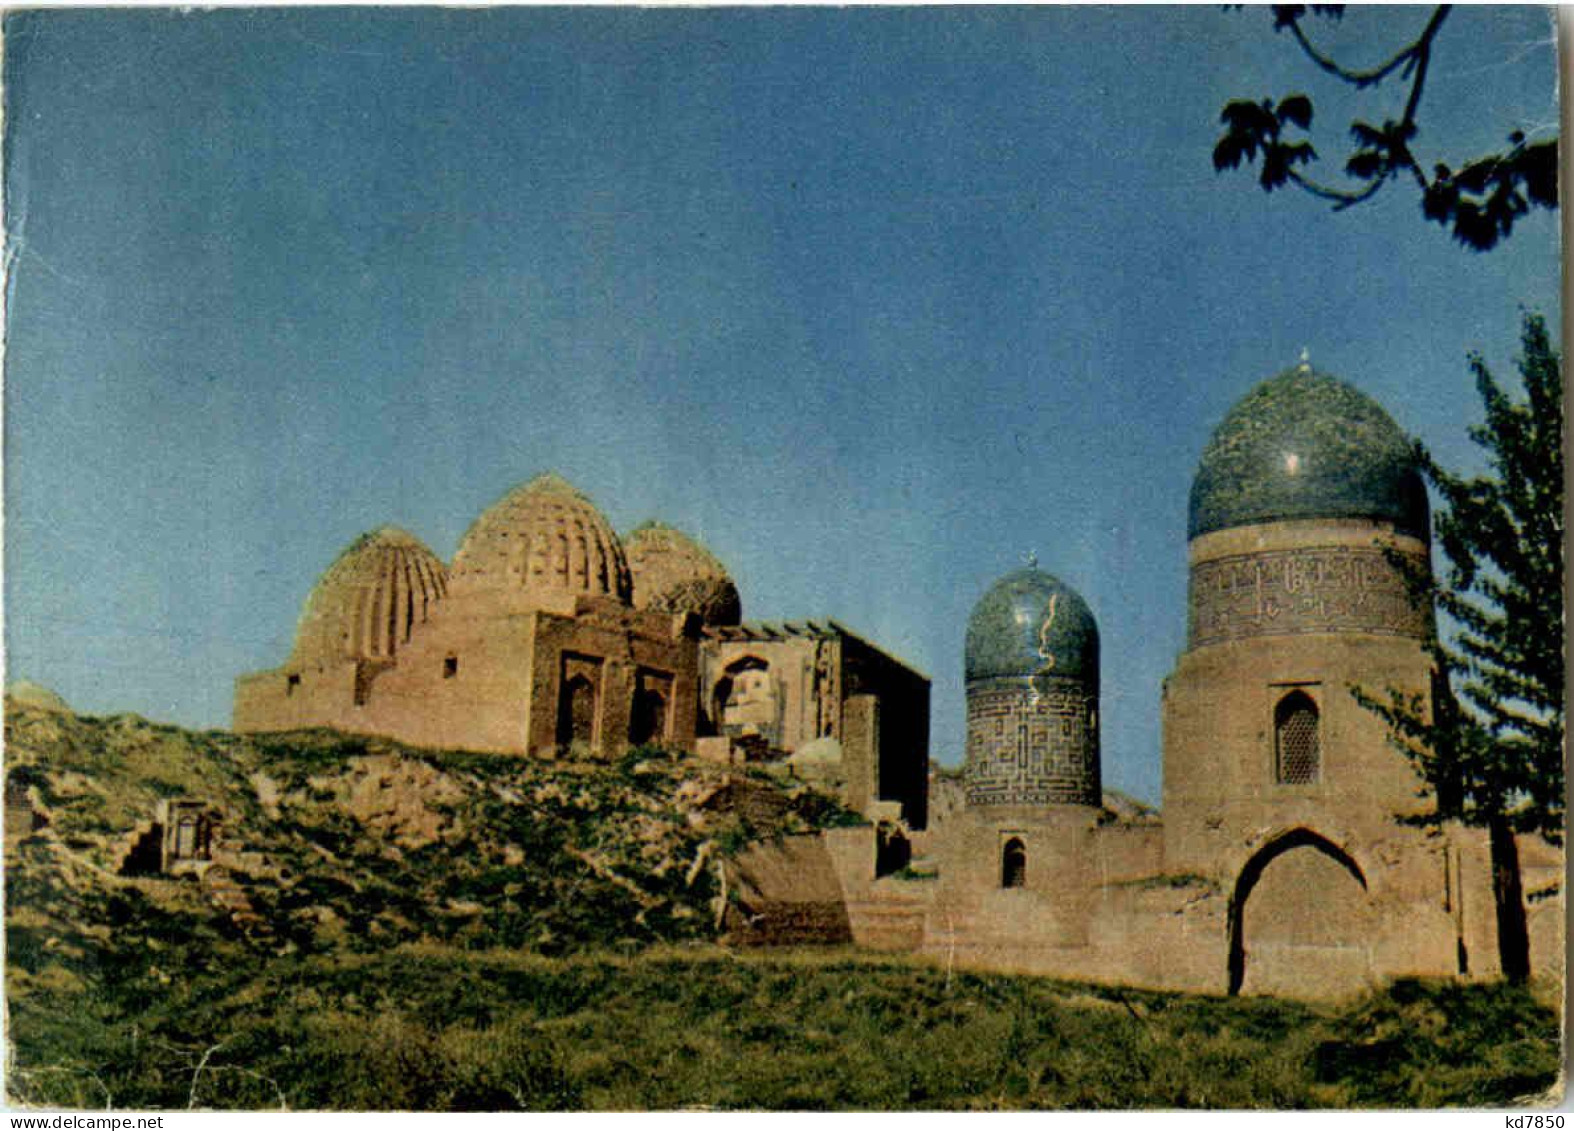 Samerqand - Usbekistan